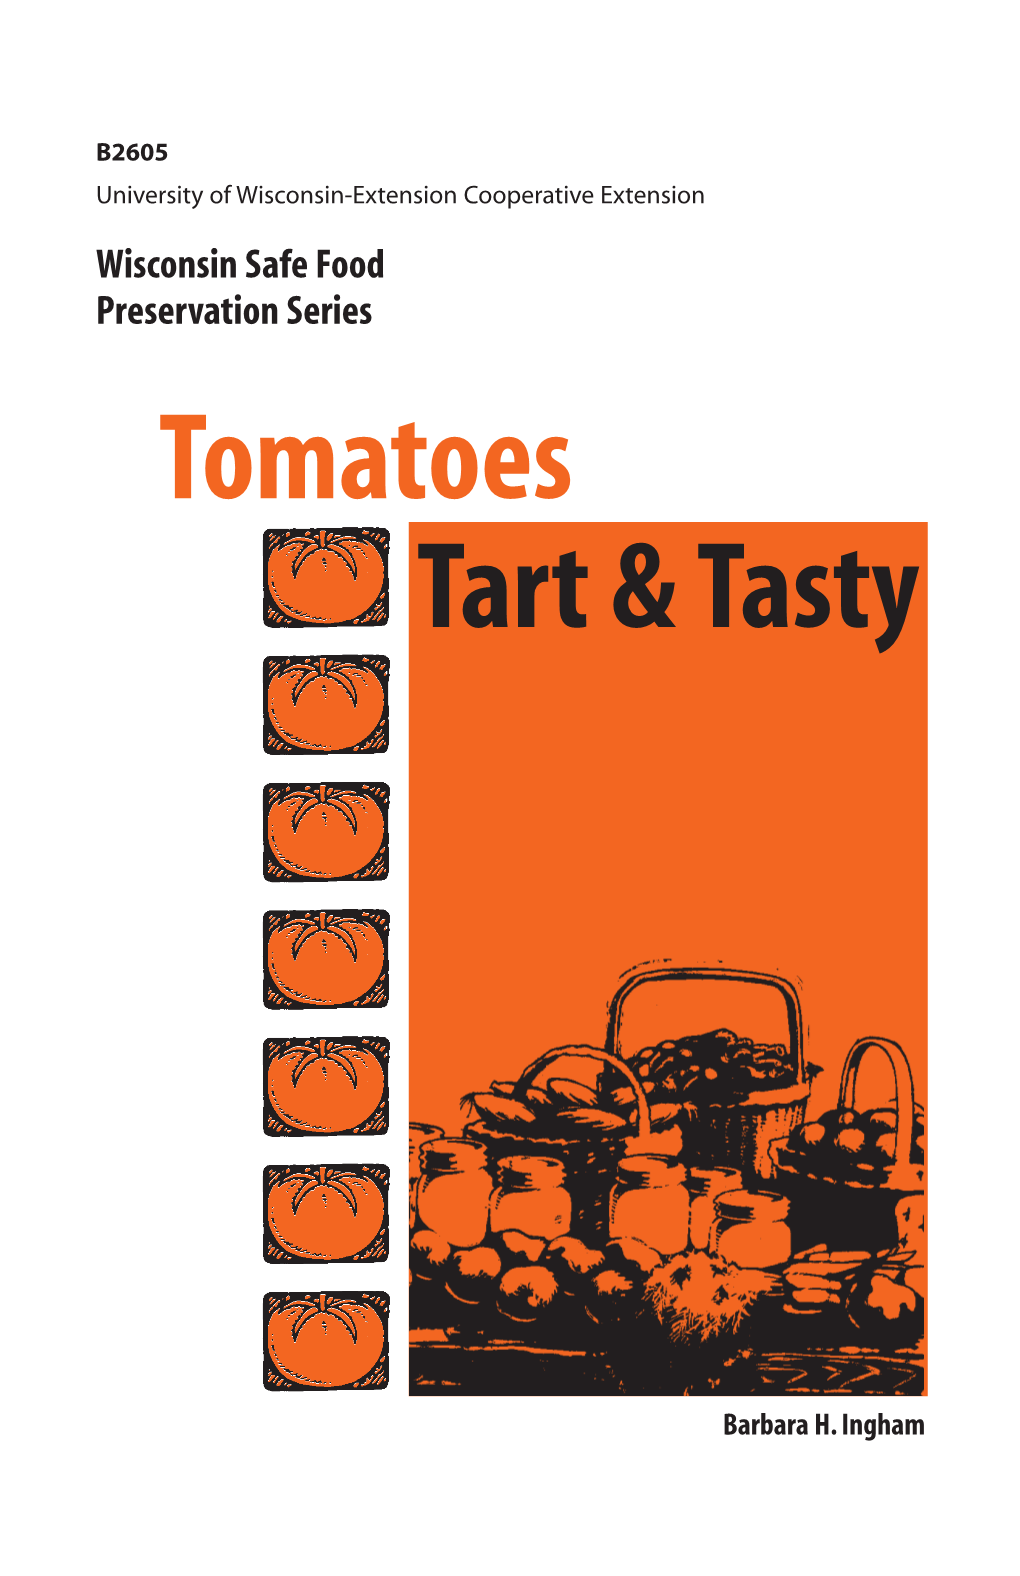 Tomatoes Tart & Tasty